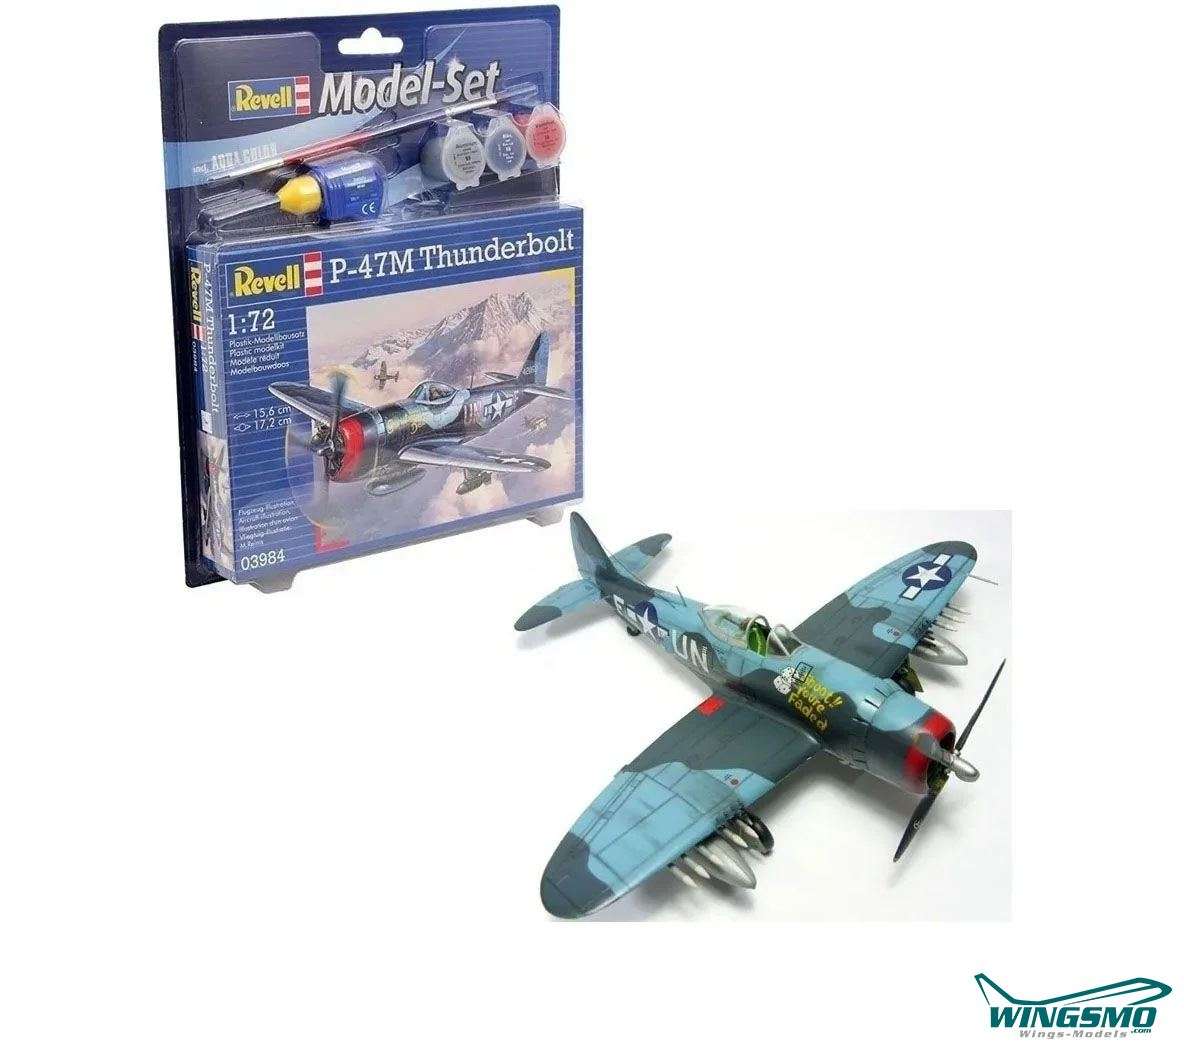 Revell Model Set P-47 M Thunderbolt 1:72 63984